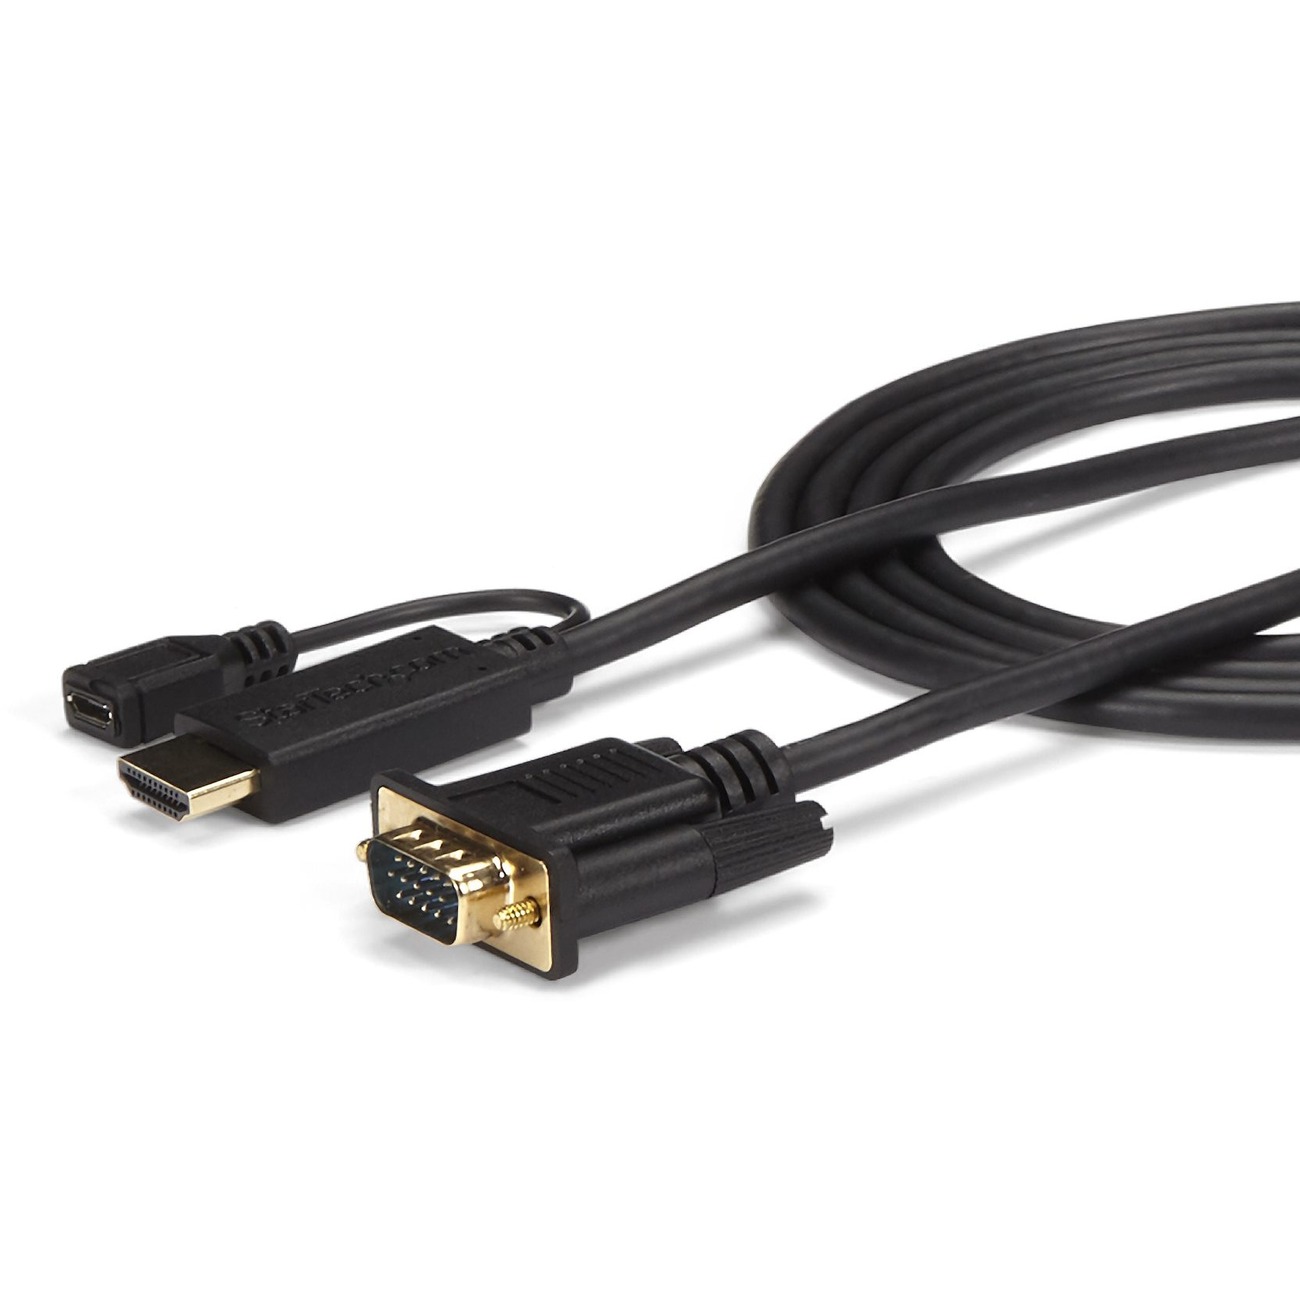 Cable DVI vers VGA adaptateur DVI D 24 1 Supporte 1080P 60Hz pour